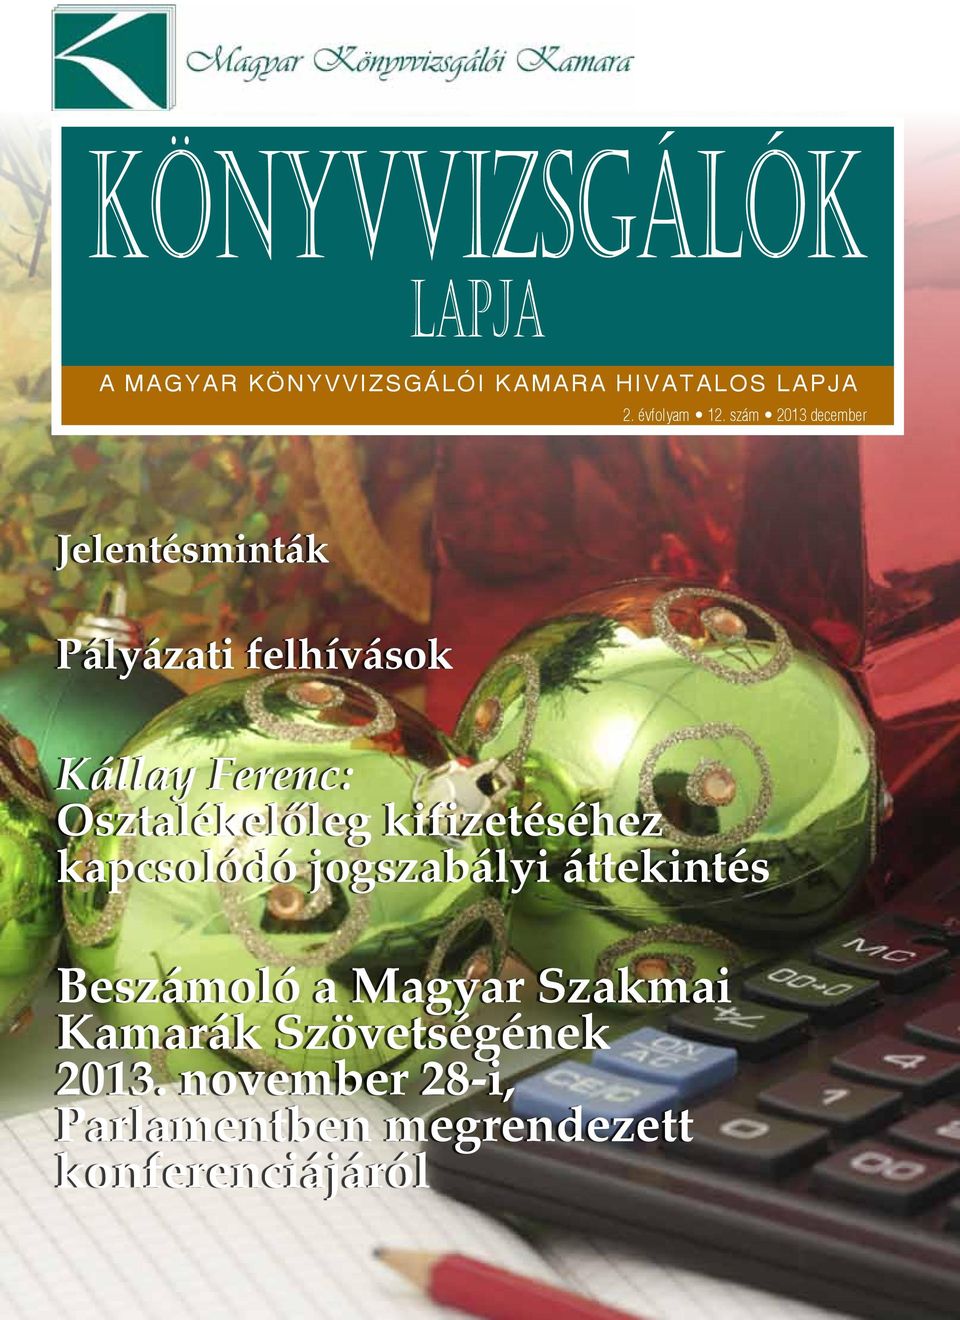 Osztalékelőleg kifizetéséhez kapcsolódó jogszabályi áttekintés Beszámoló a Magyar